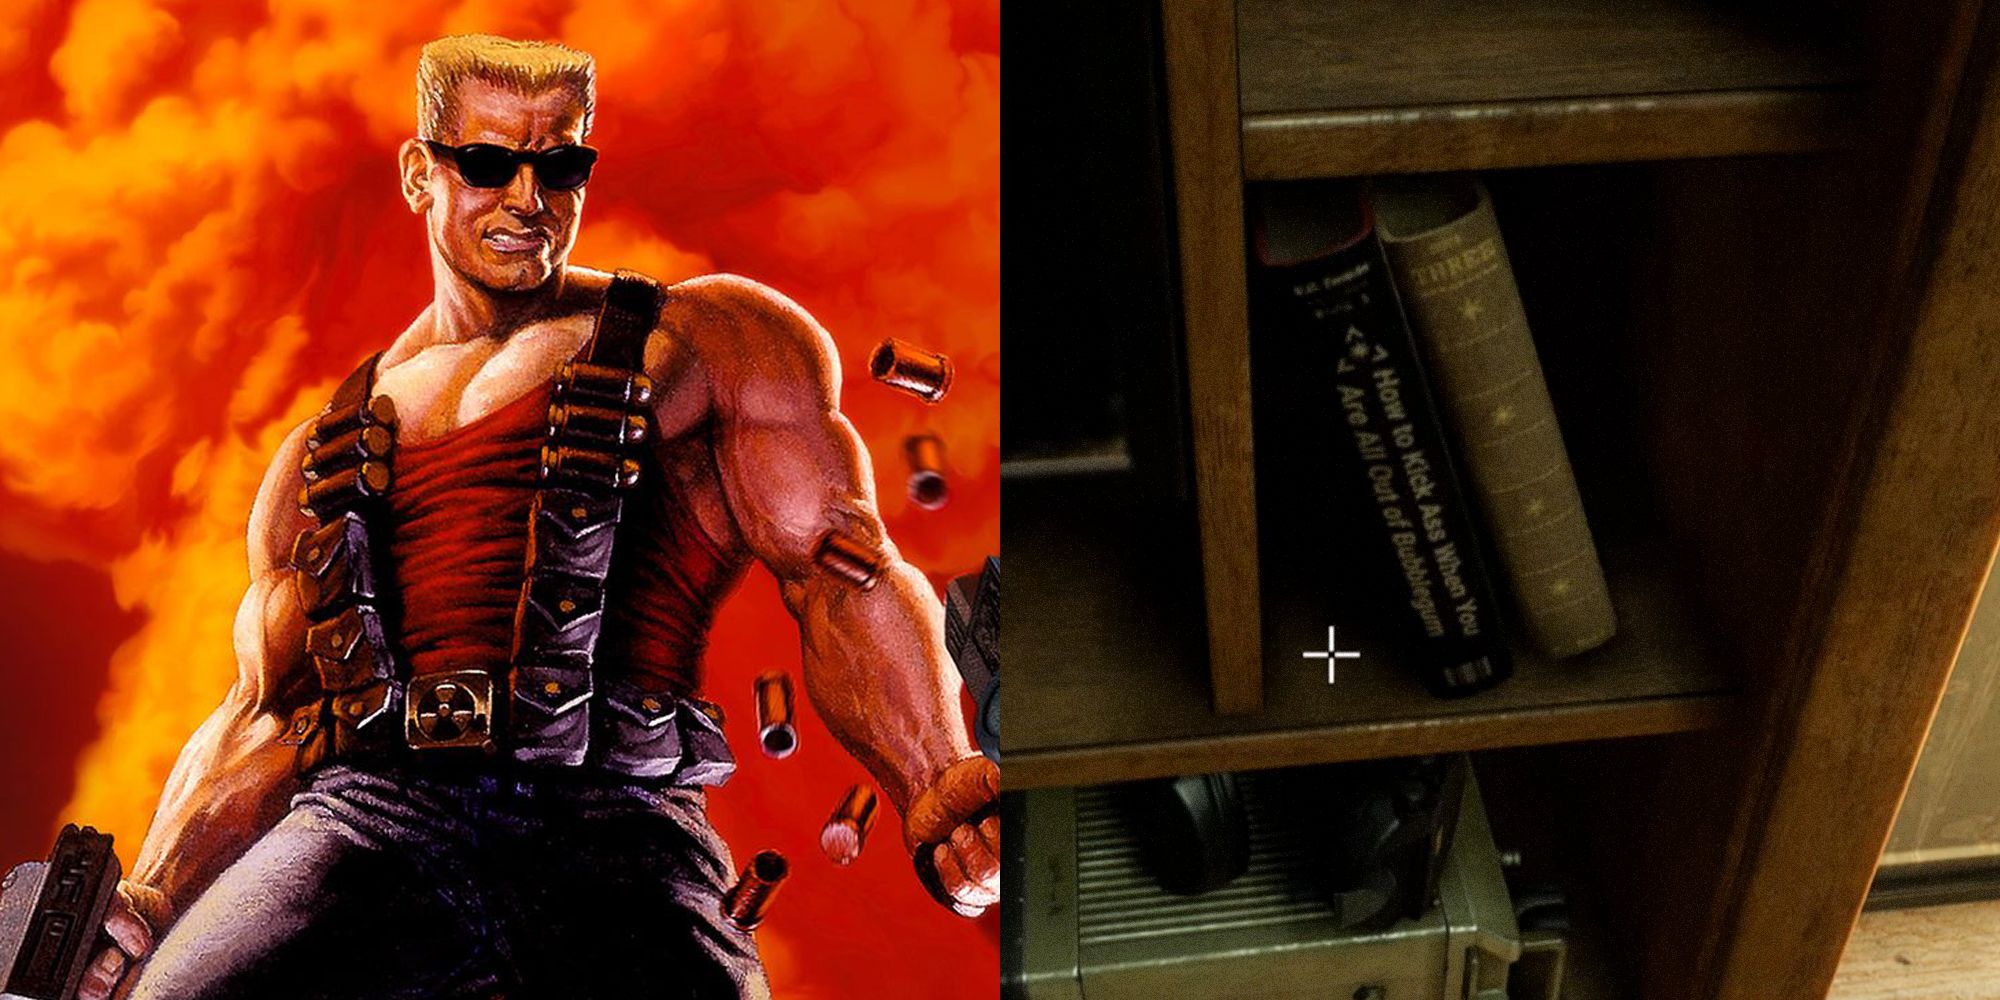 Duke Nukem, Back 4 Blood. Split image. Duke Nukem on the left, bookcase from Back 4 Blood on the right.